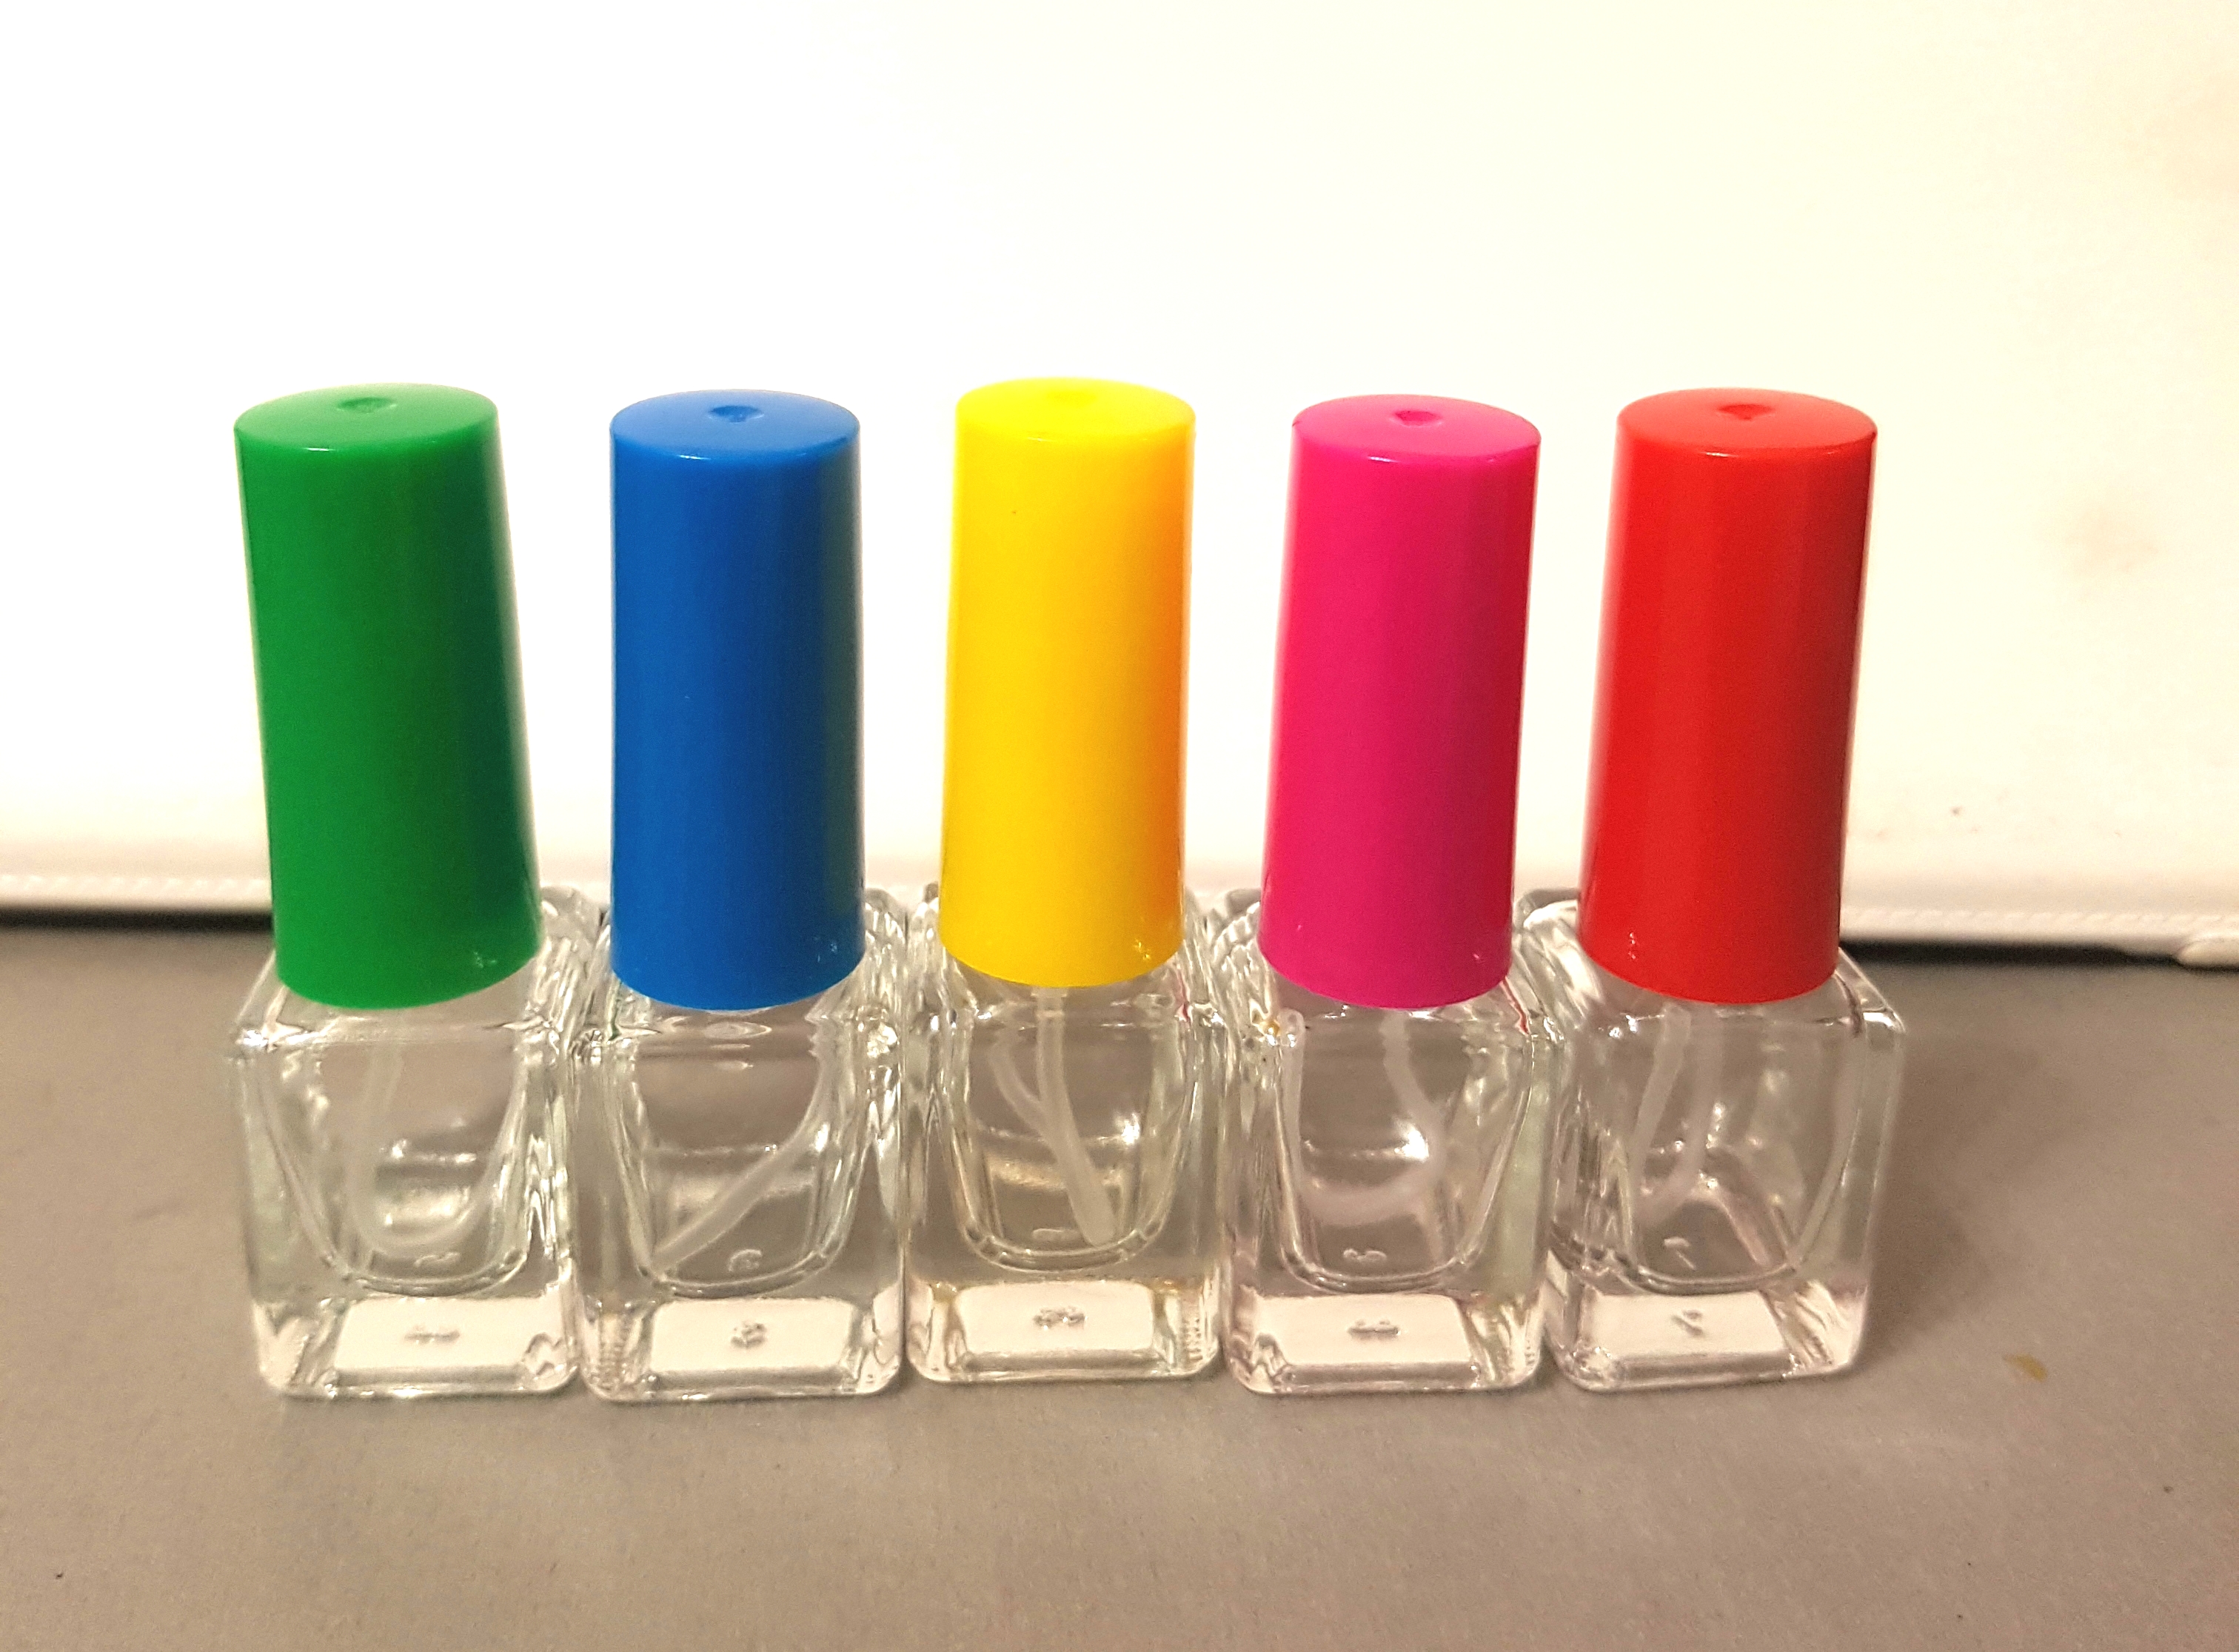 5 мл стекло микроспрей  пластиковый  (цветной)  